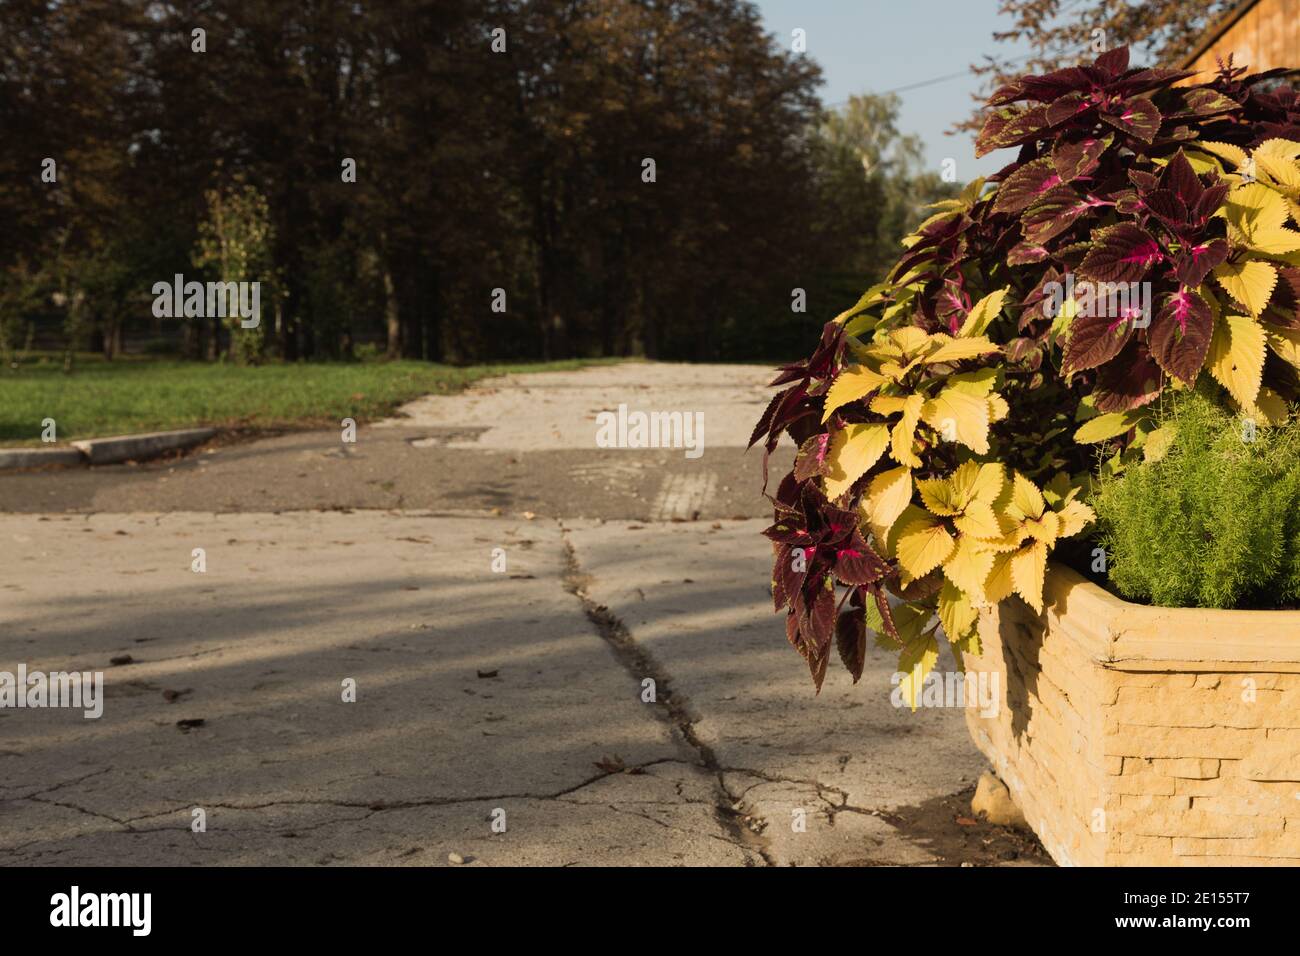 Un Coleus coloré en pleine floraison dans un parc abandonné. Coleus est un genre d'herbes ou d'arbustes annuels ou vivaces, parfois succulents, parfois en chair Banque D'Images